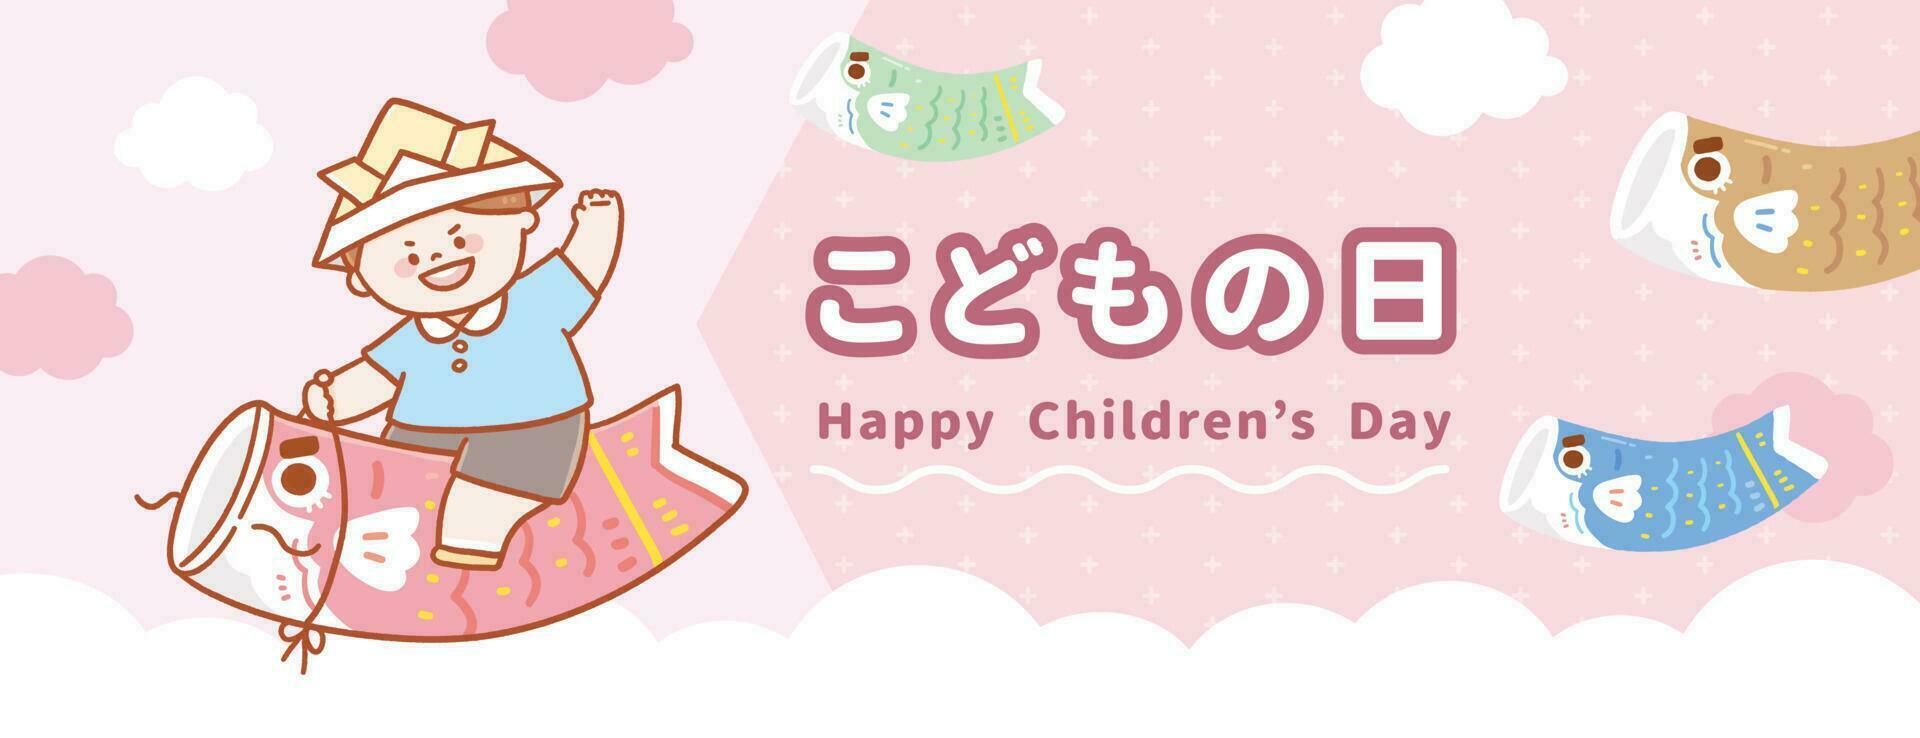 söt pojke ridning en karp på en rosa bakgrund med färgrik karpar och vit moln.japanska barns dag.vektor hand dragen illustration. vektor